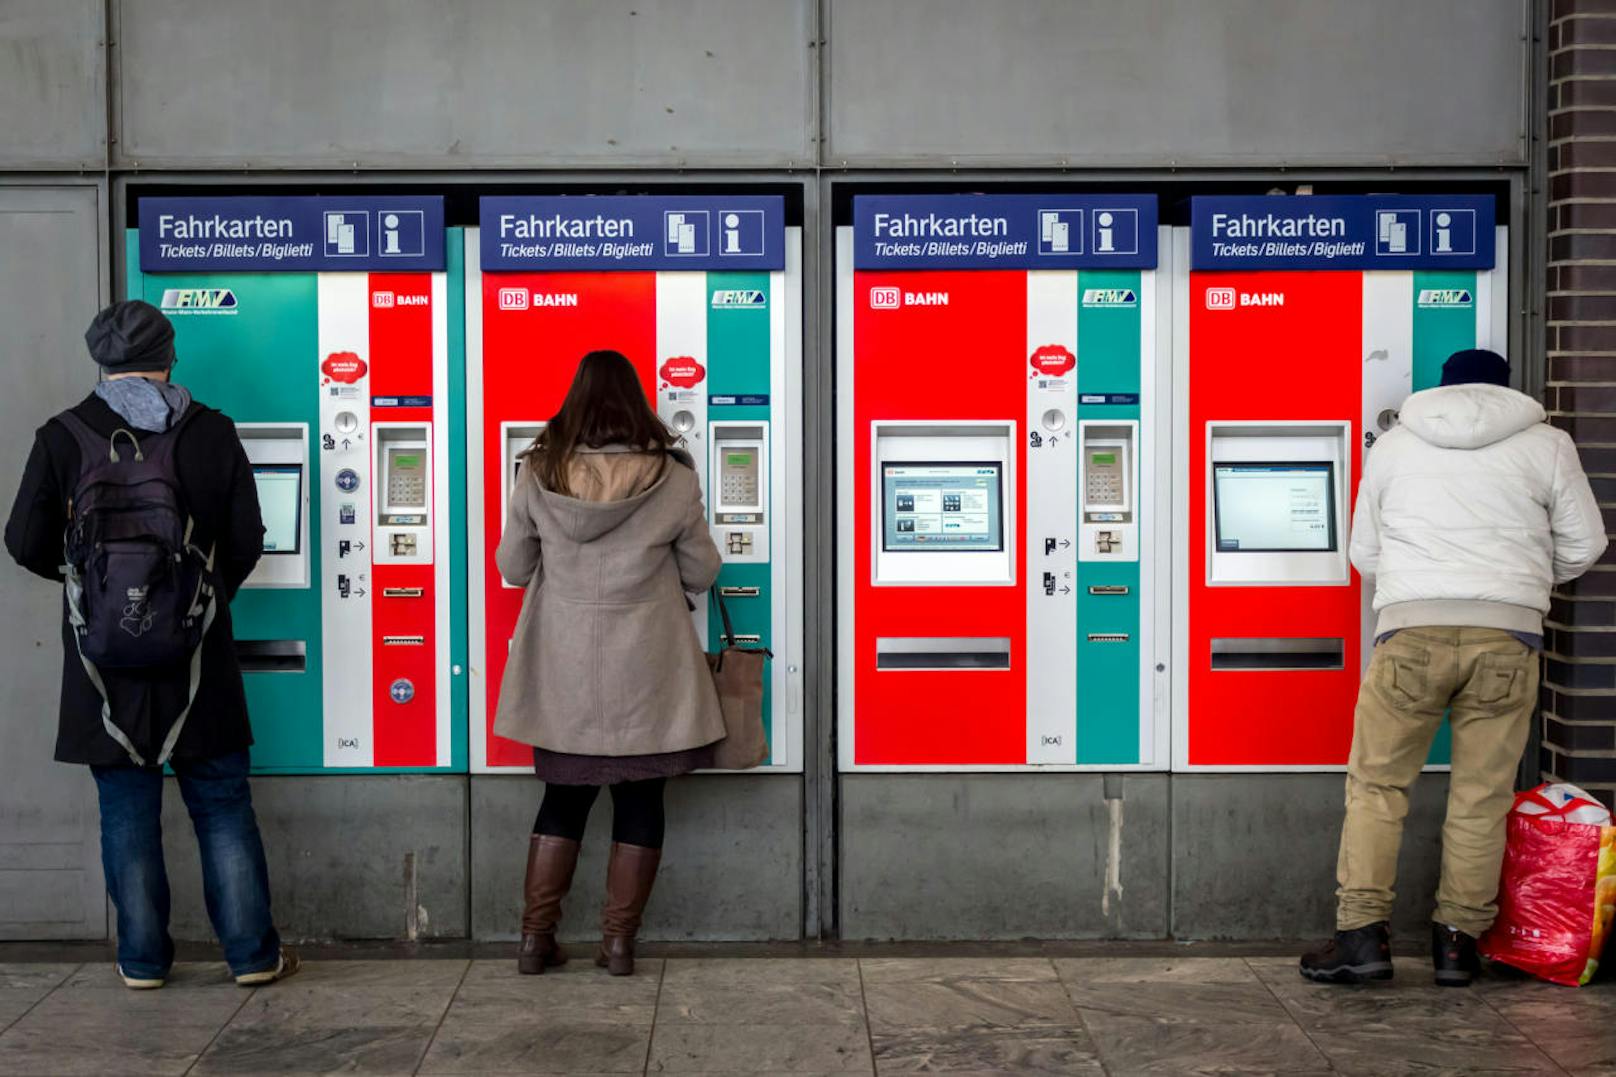 Fahrscheinautomaten haben mit ziemlicher Sicherheit bald ausgedient. Bahn und Bus setzen eben auf "mobil". E-Tickets werden den Papierfahrschein ablösen. 